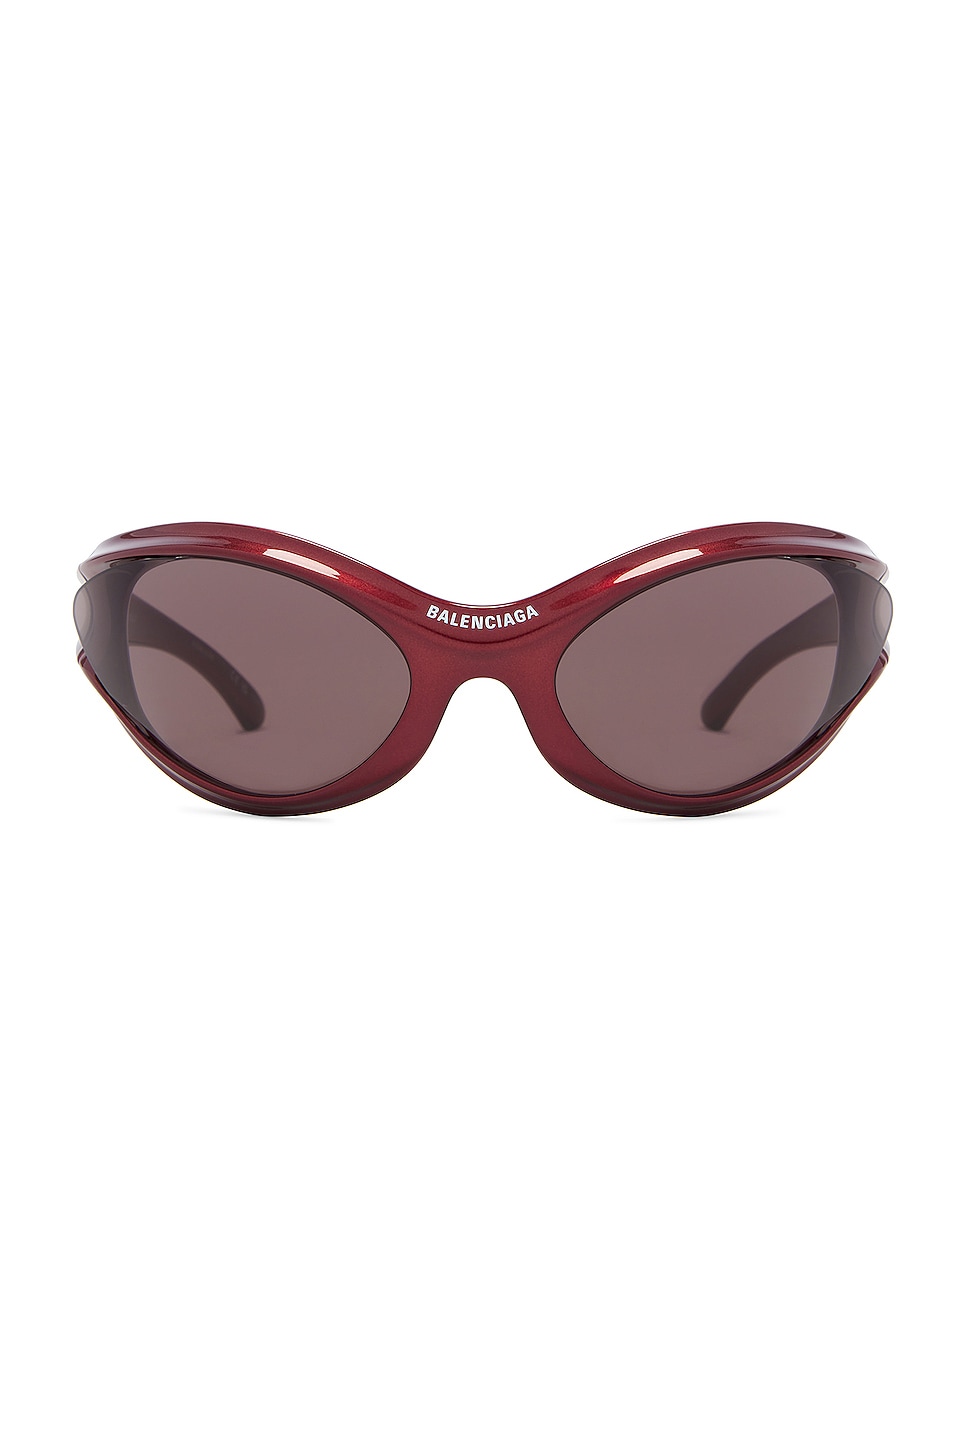 Dynamo Geometrical Sunglasses in Burgundy